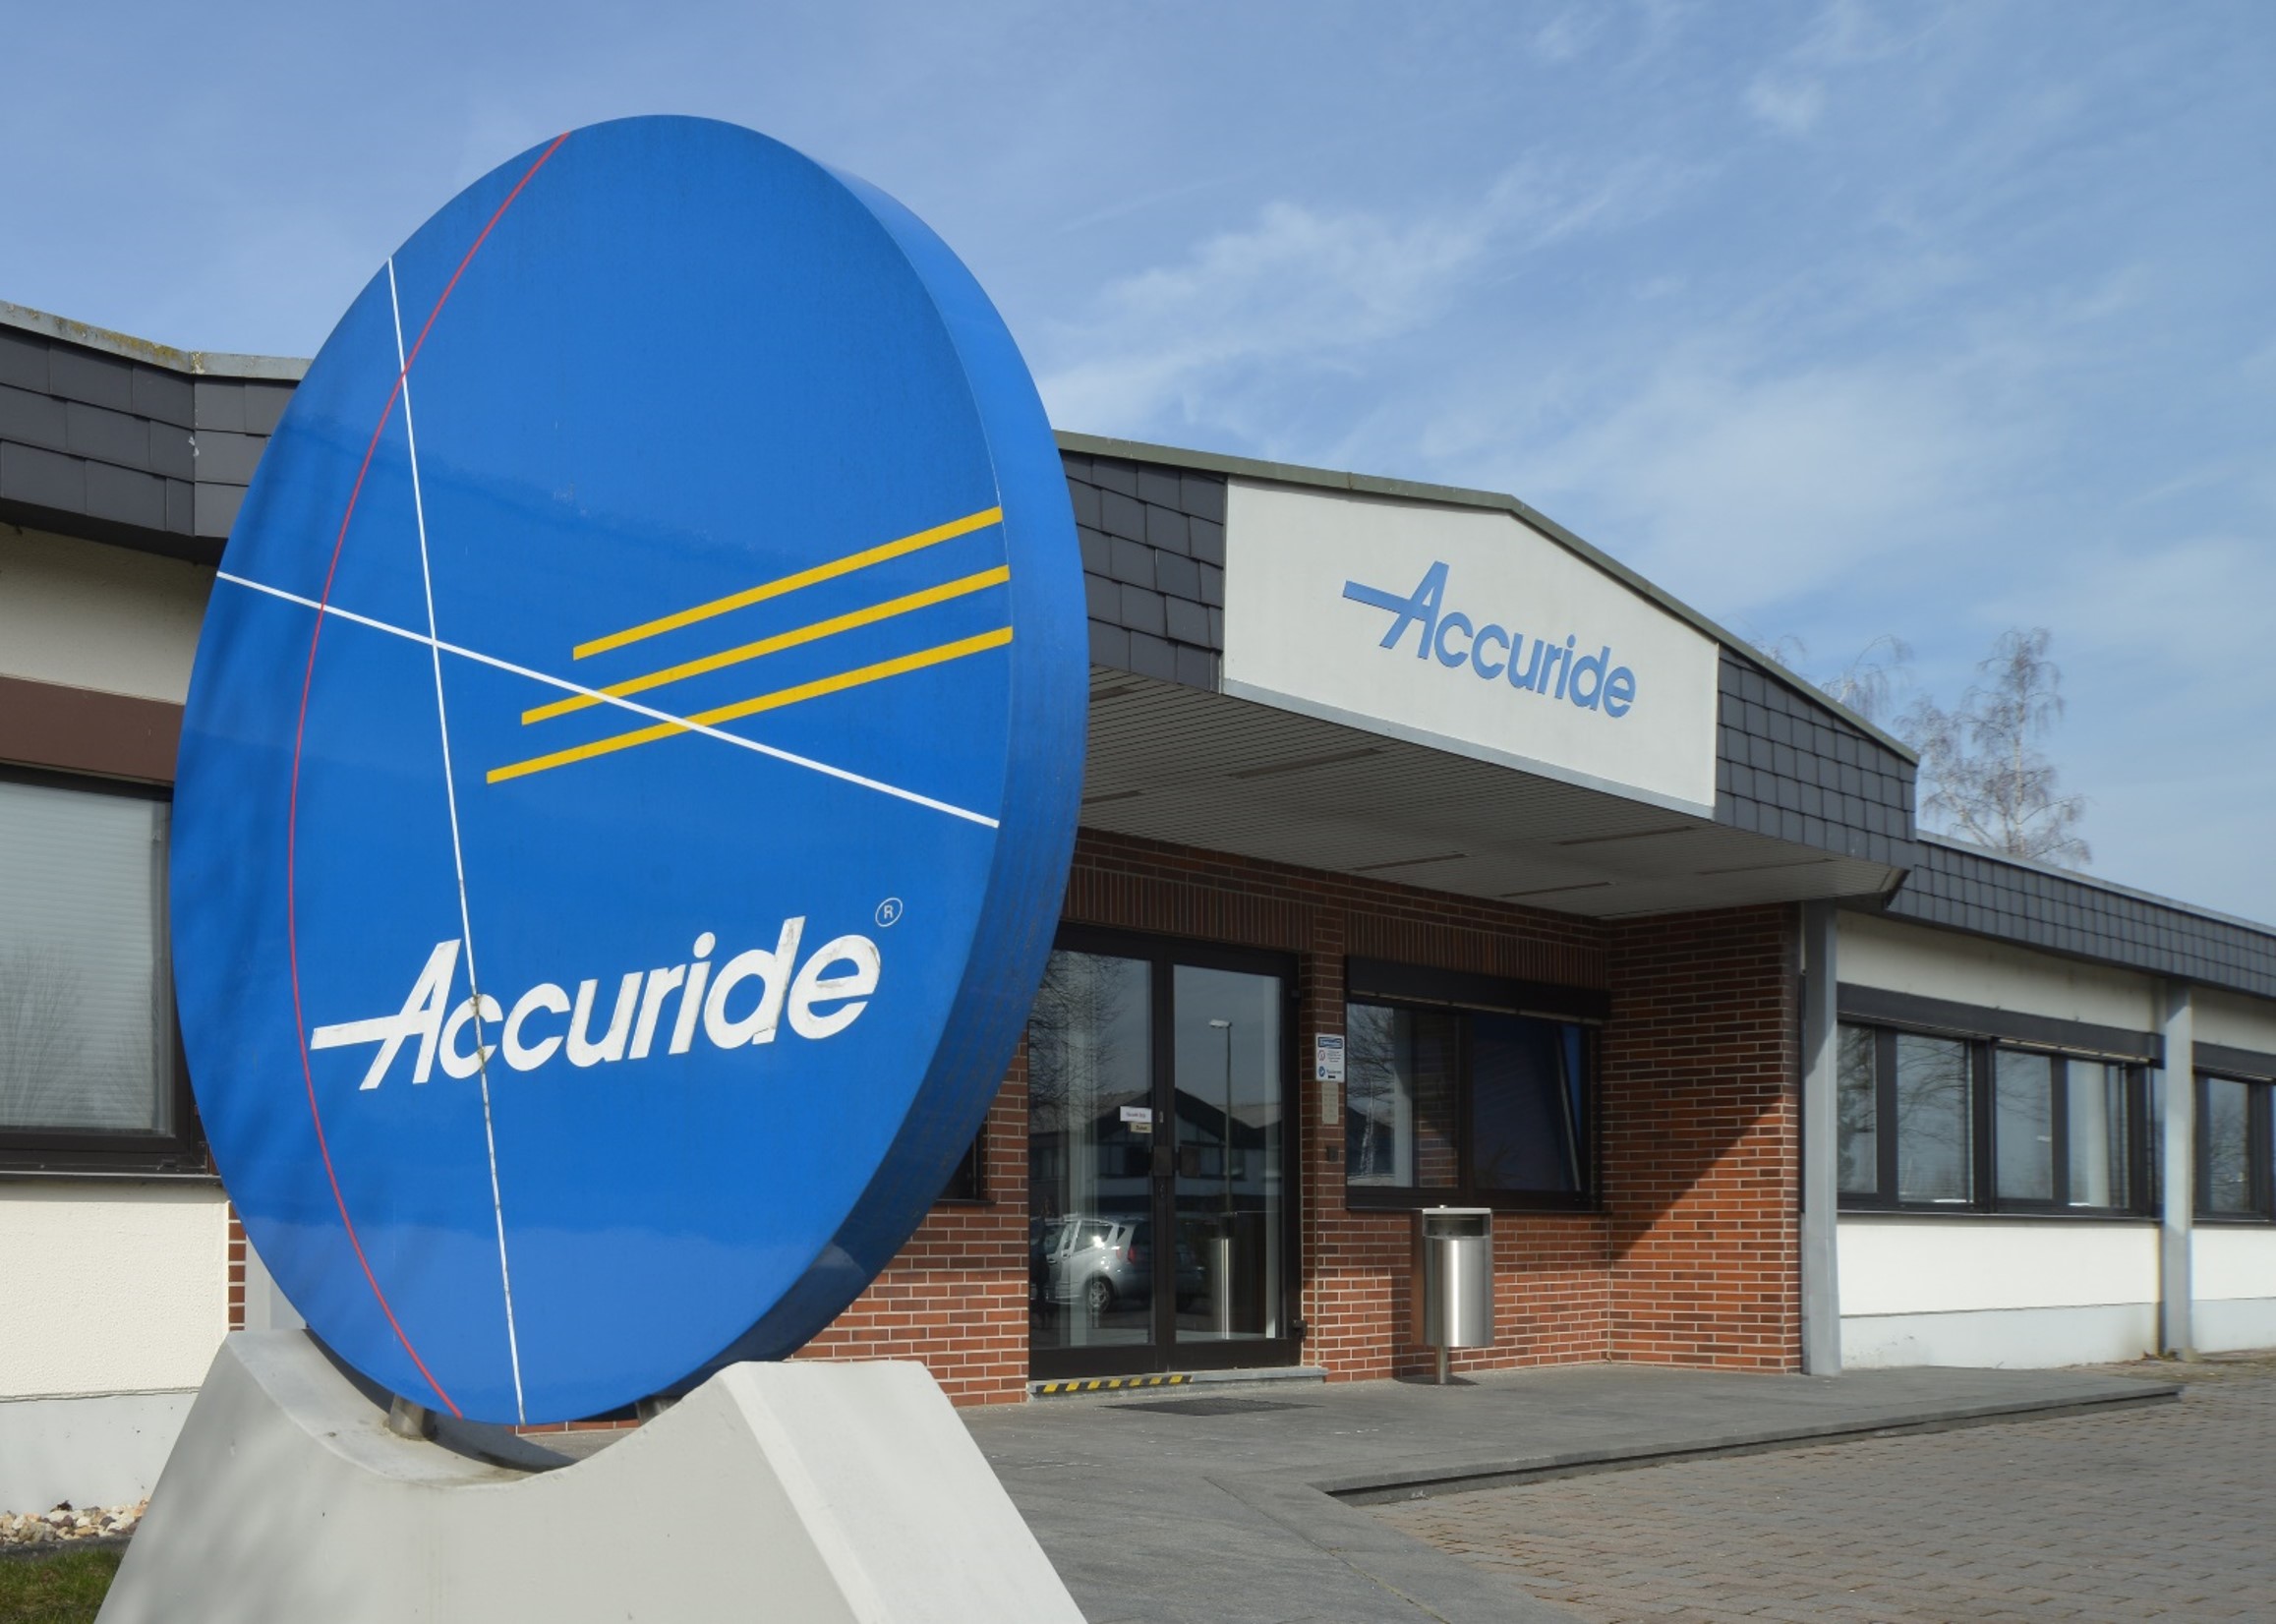 Accuride International zajmuje 16. miejsce wśród najbardziej prężnych firm w Niemczech